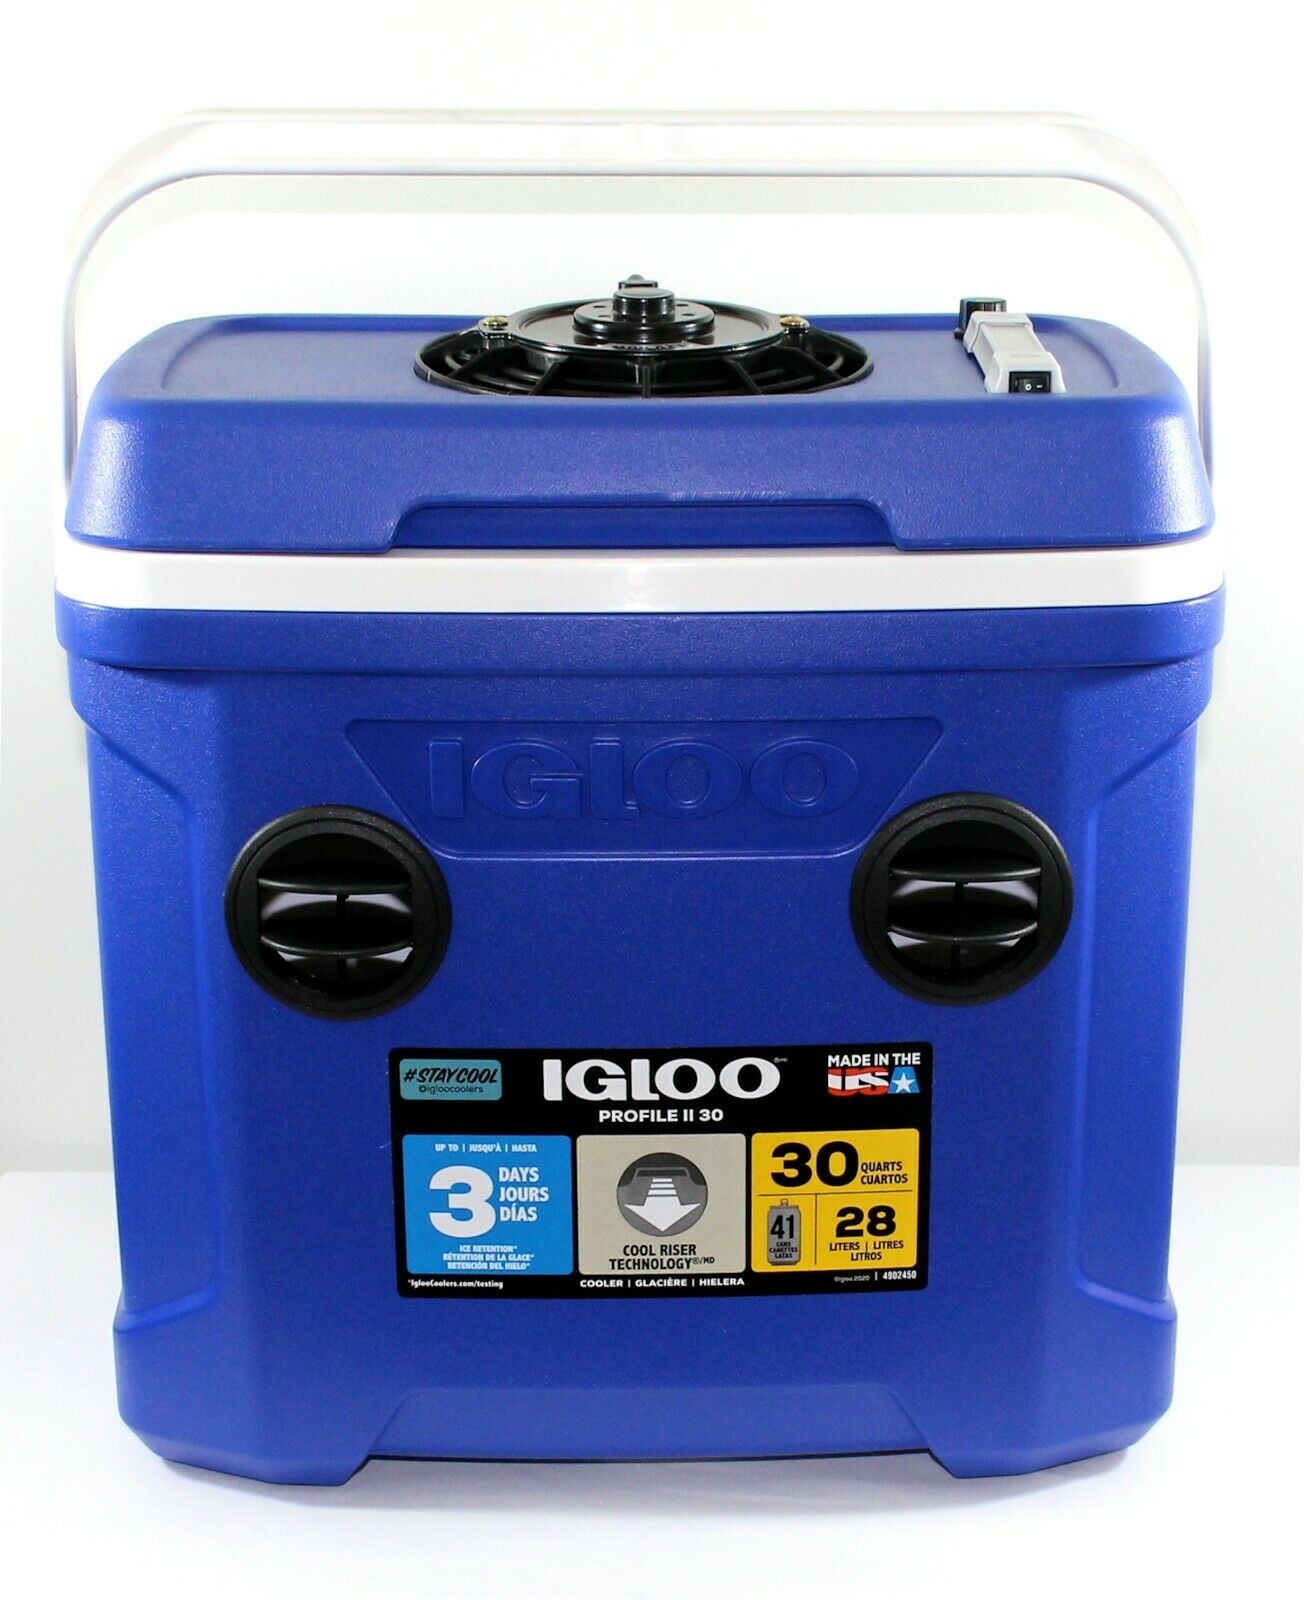 12v Portable Air Conditioner Cooler 30 Quart 560 Cfm Digital Multi Speed